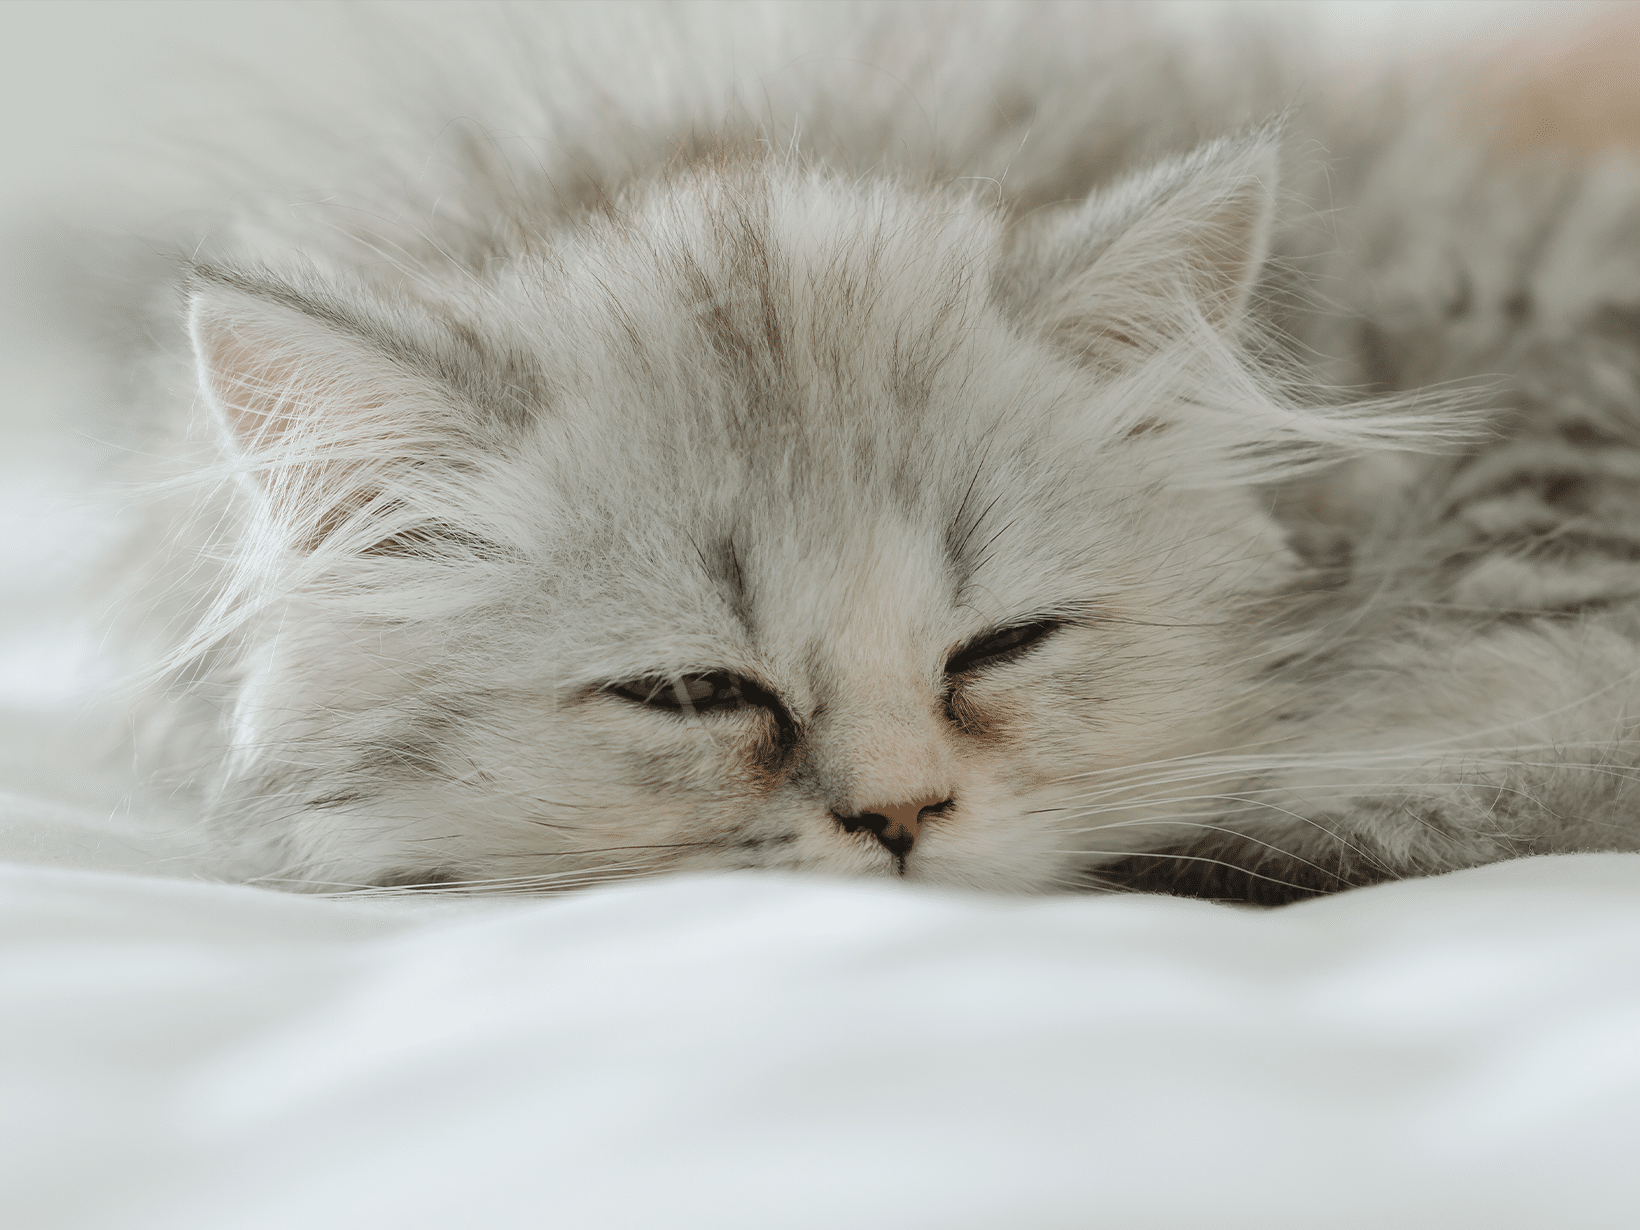 Auto-immuunziekte symptomen bij een kat